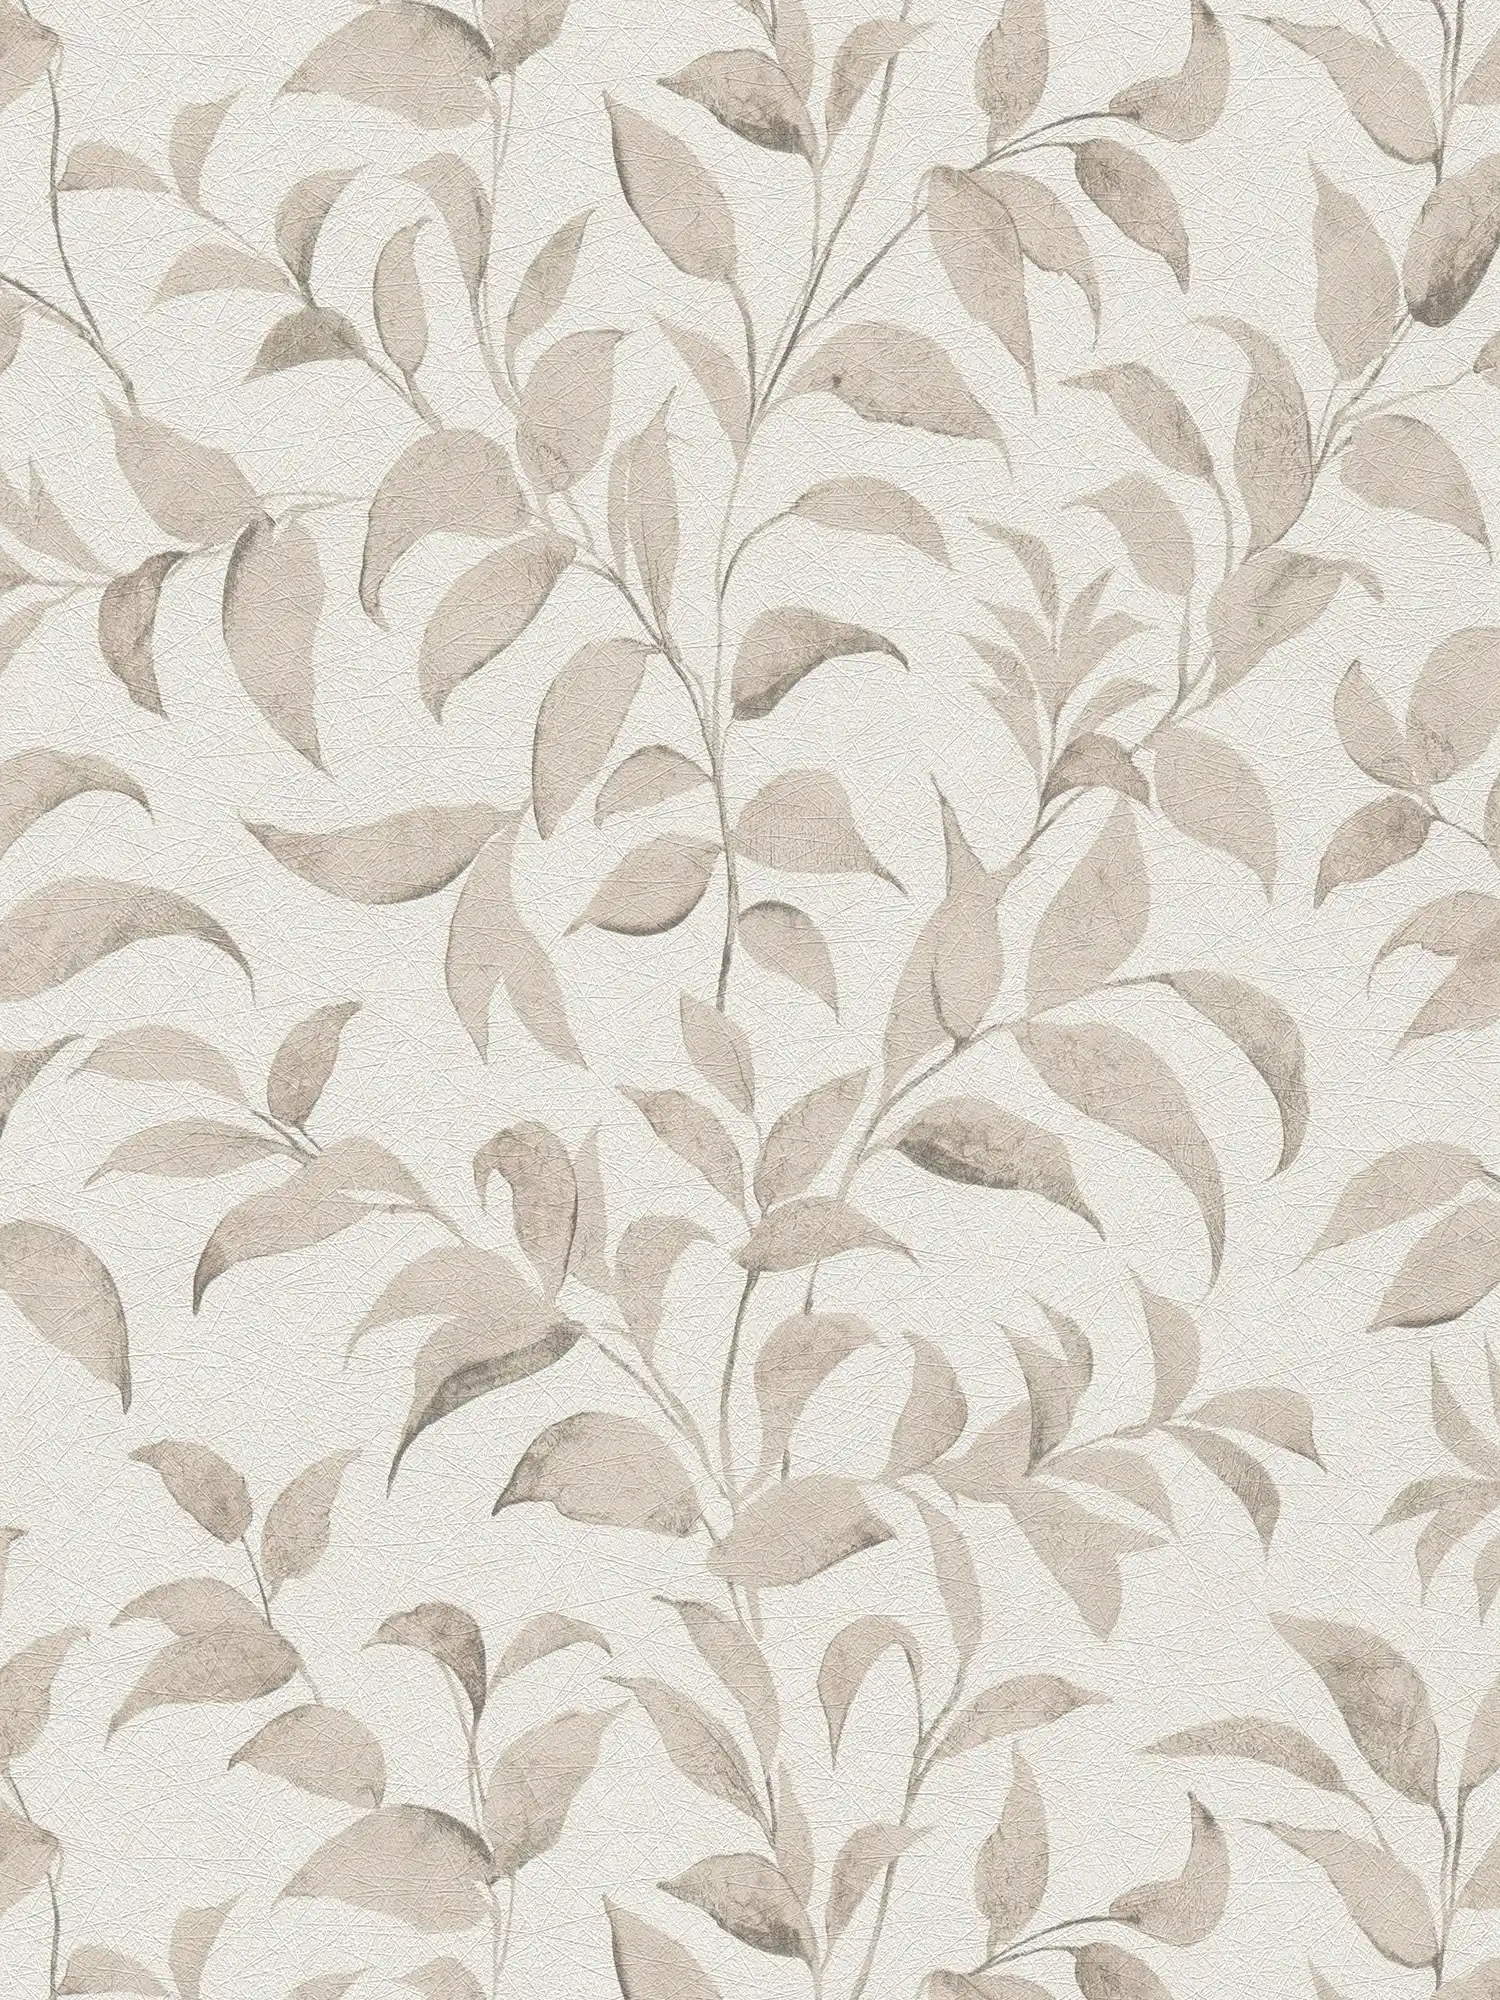         Carta da parati a foglie floreali con texture scintillante - bianco, grigio, beige
    